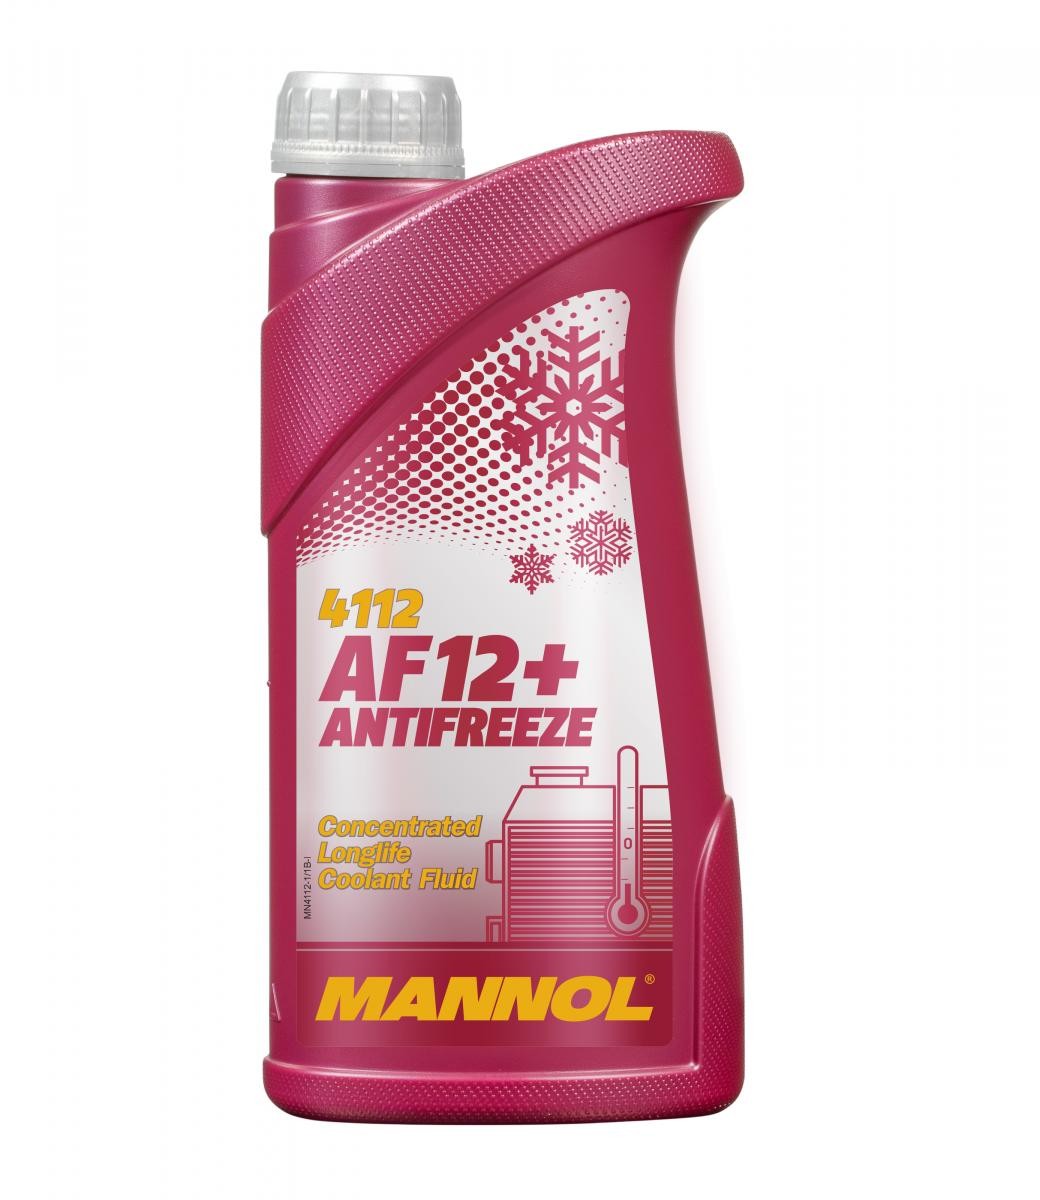 [Paket] 2L Kühlerfrostschutz Rot G12+ Mannol Antifreeze AF12+ -40°C  Kühlmittel Audi VW